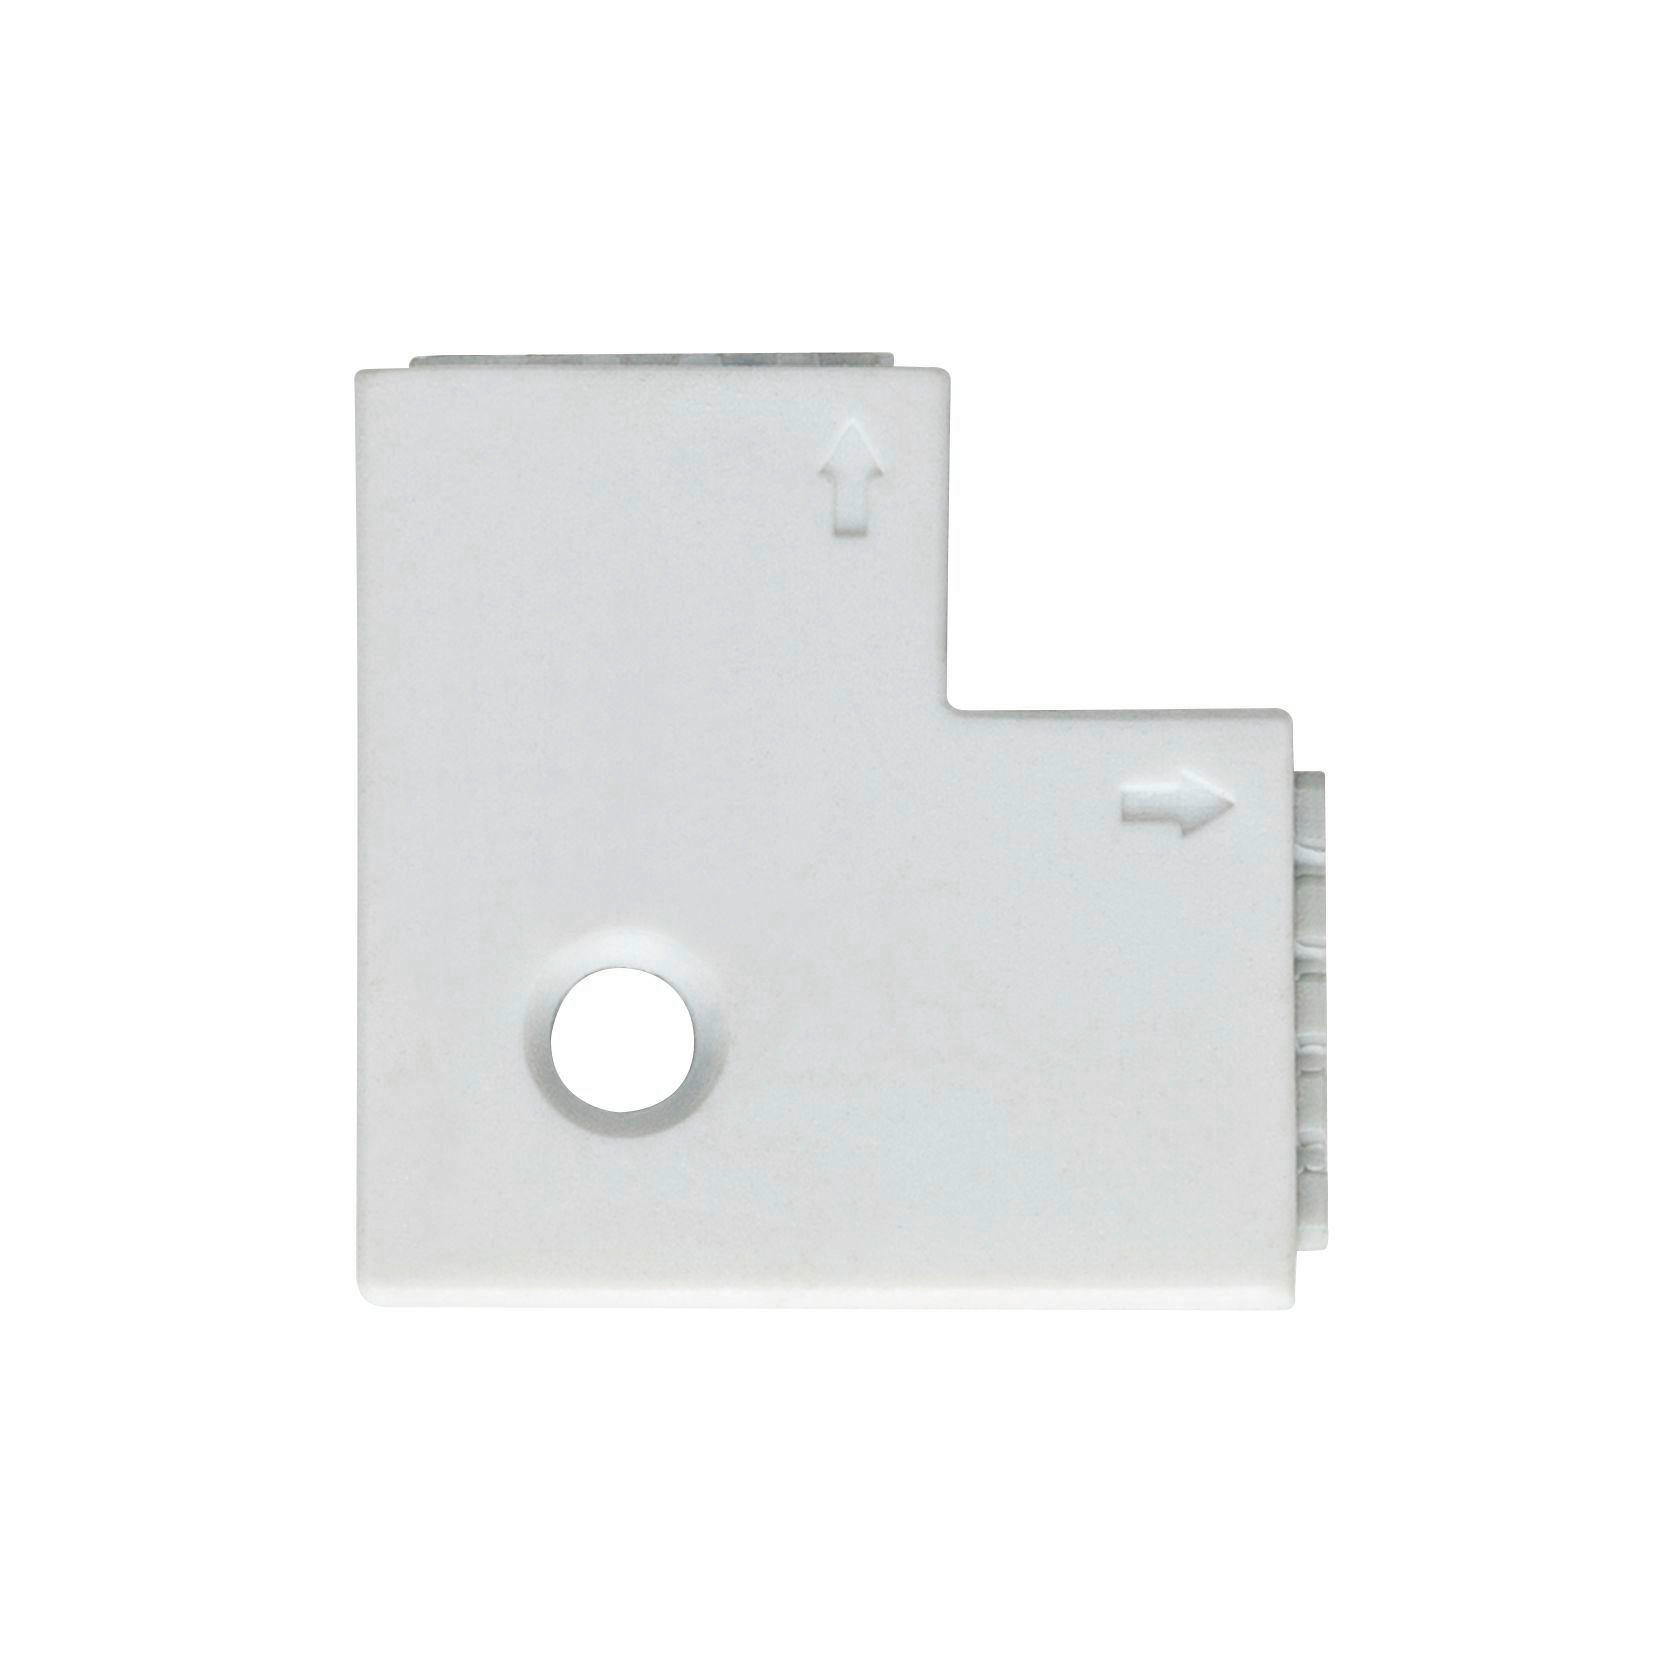 LED-STRIP  - Weiß, Basics, Kunststoff (2,5/0,45cm) - Paulmann